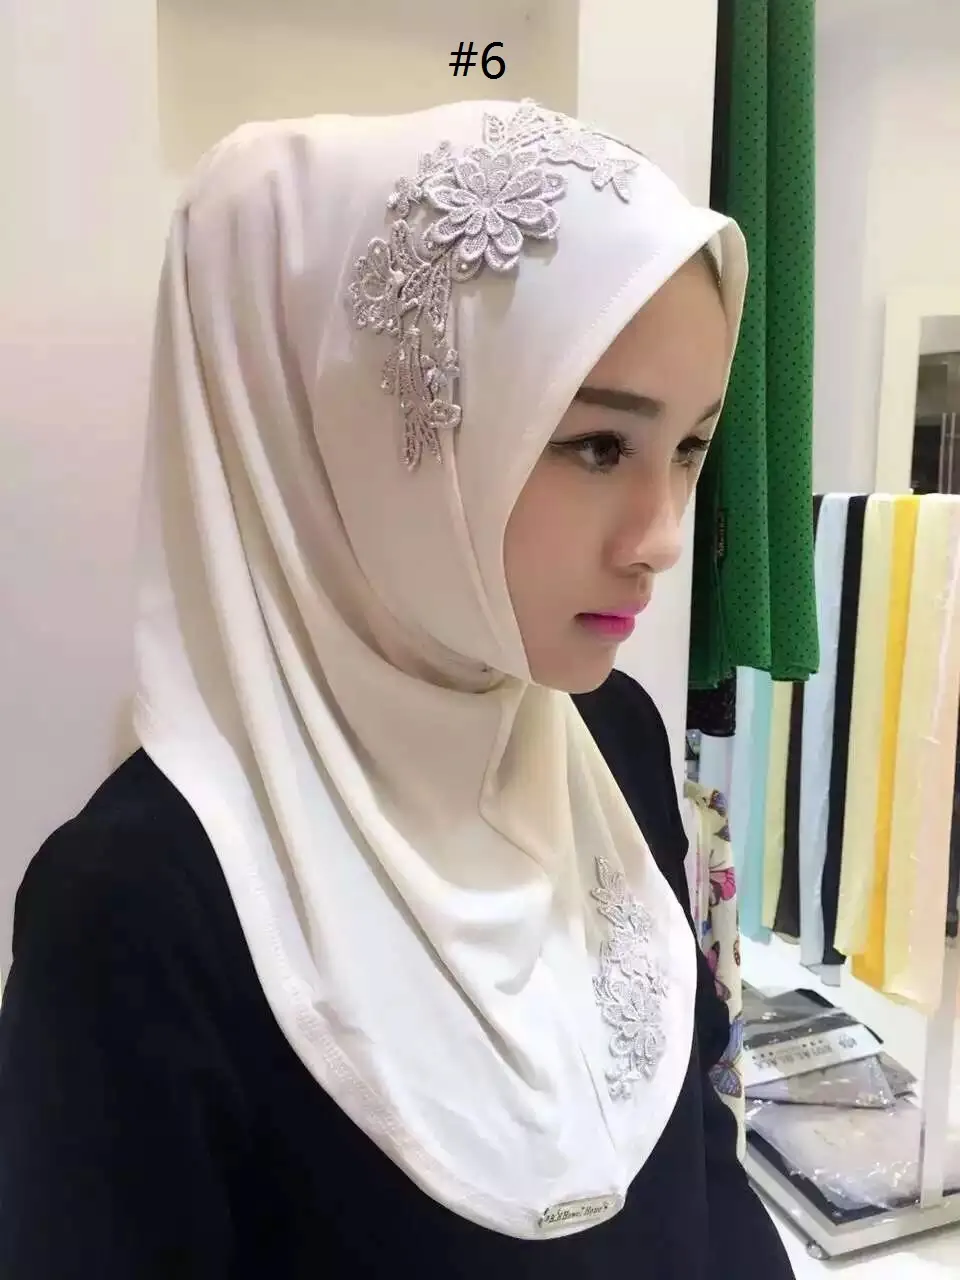 Vrouwen Kant Muslim Hijab Gedrukt Instant Sjaals Jersey Modal Sjaal Amira Slip op Sjaals Wraps Women's Headcloth kan kiezen voor kleur 77